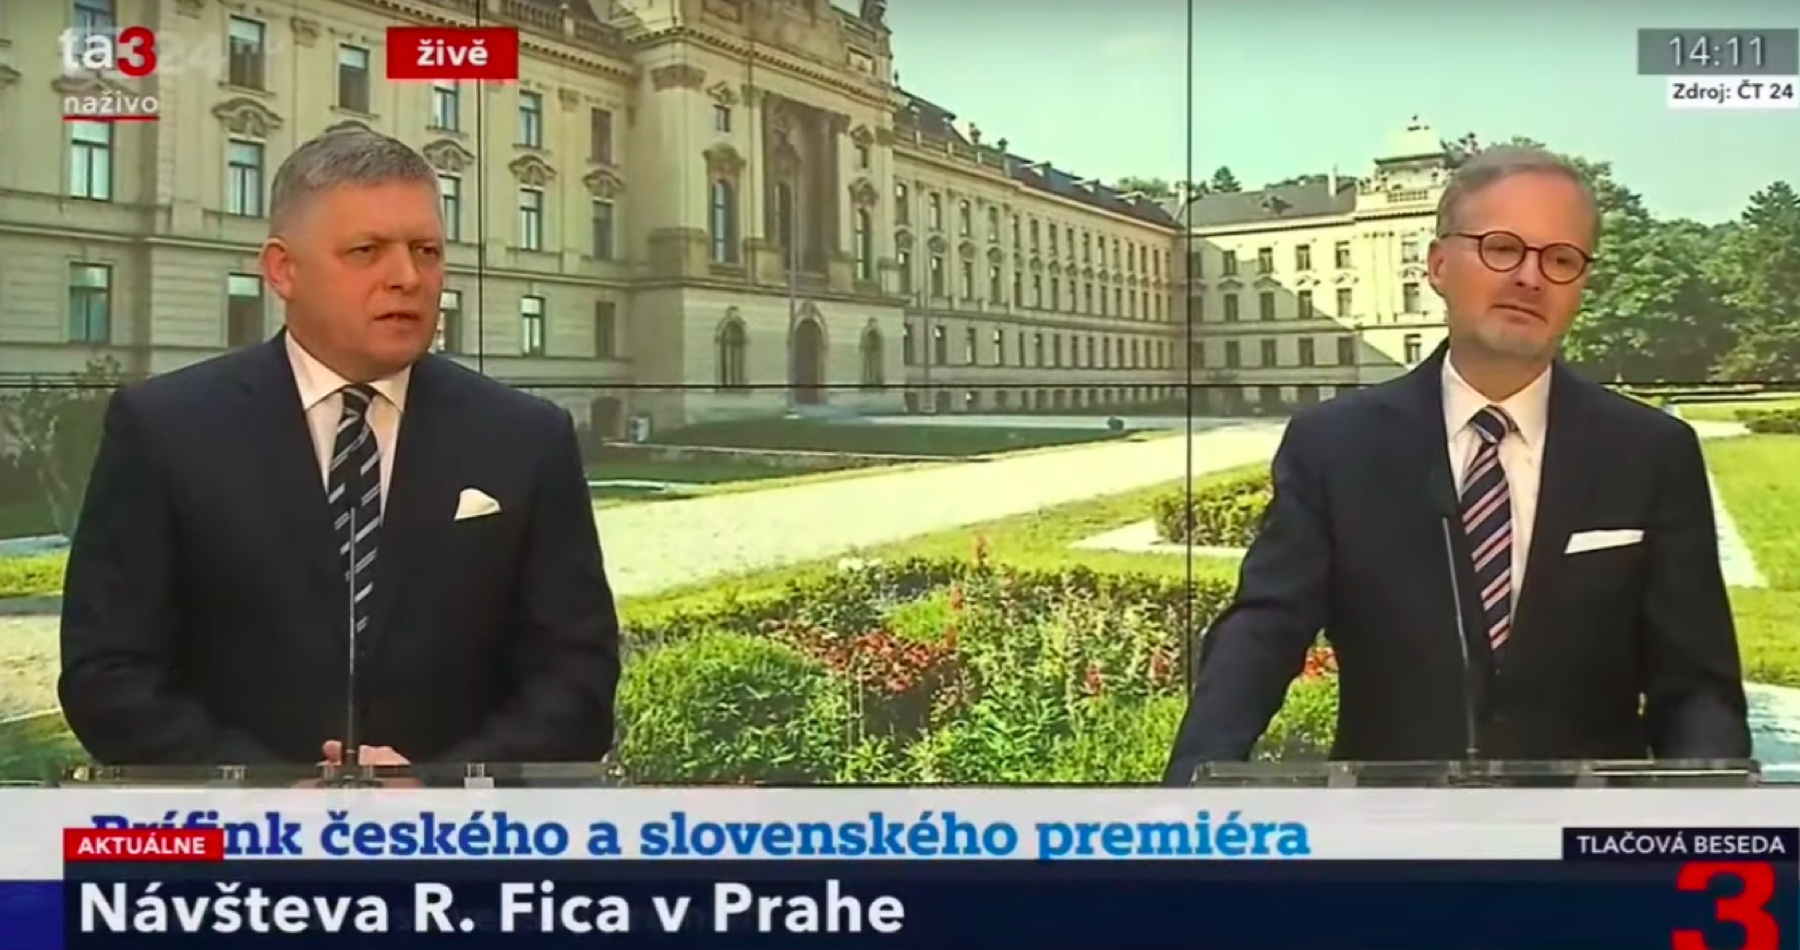 VIDEO: Nevidím dôvod teraz cestovať do Kyjeva, vyhlásil Fico v reakcii na provokačnú otázku redaktora slovenského mainstreamu počas jeho brífingu s českým premiérom Fialom